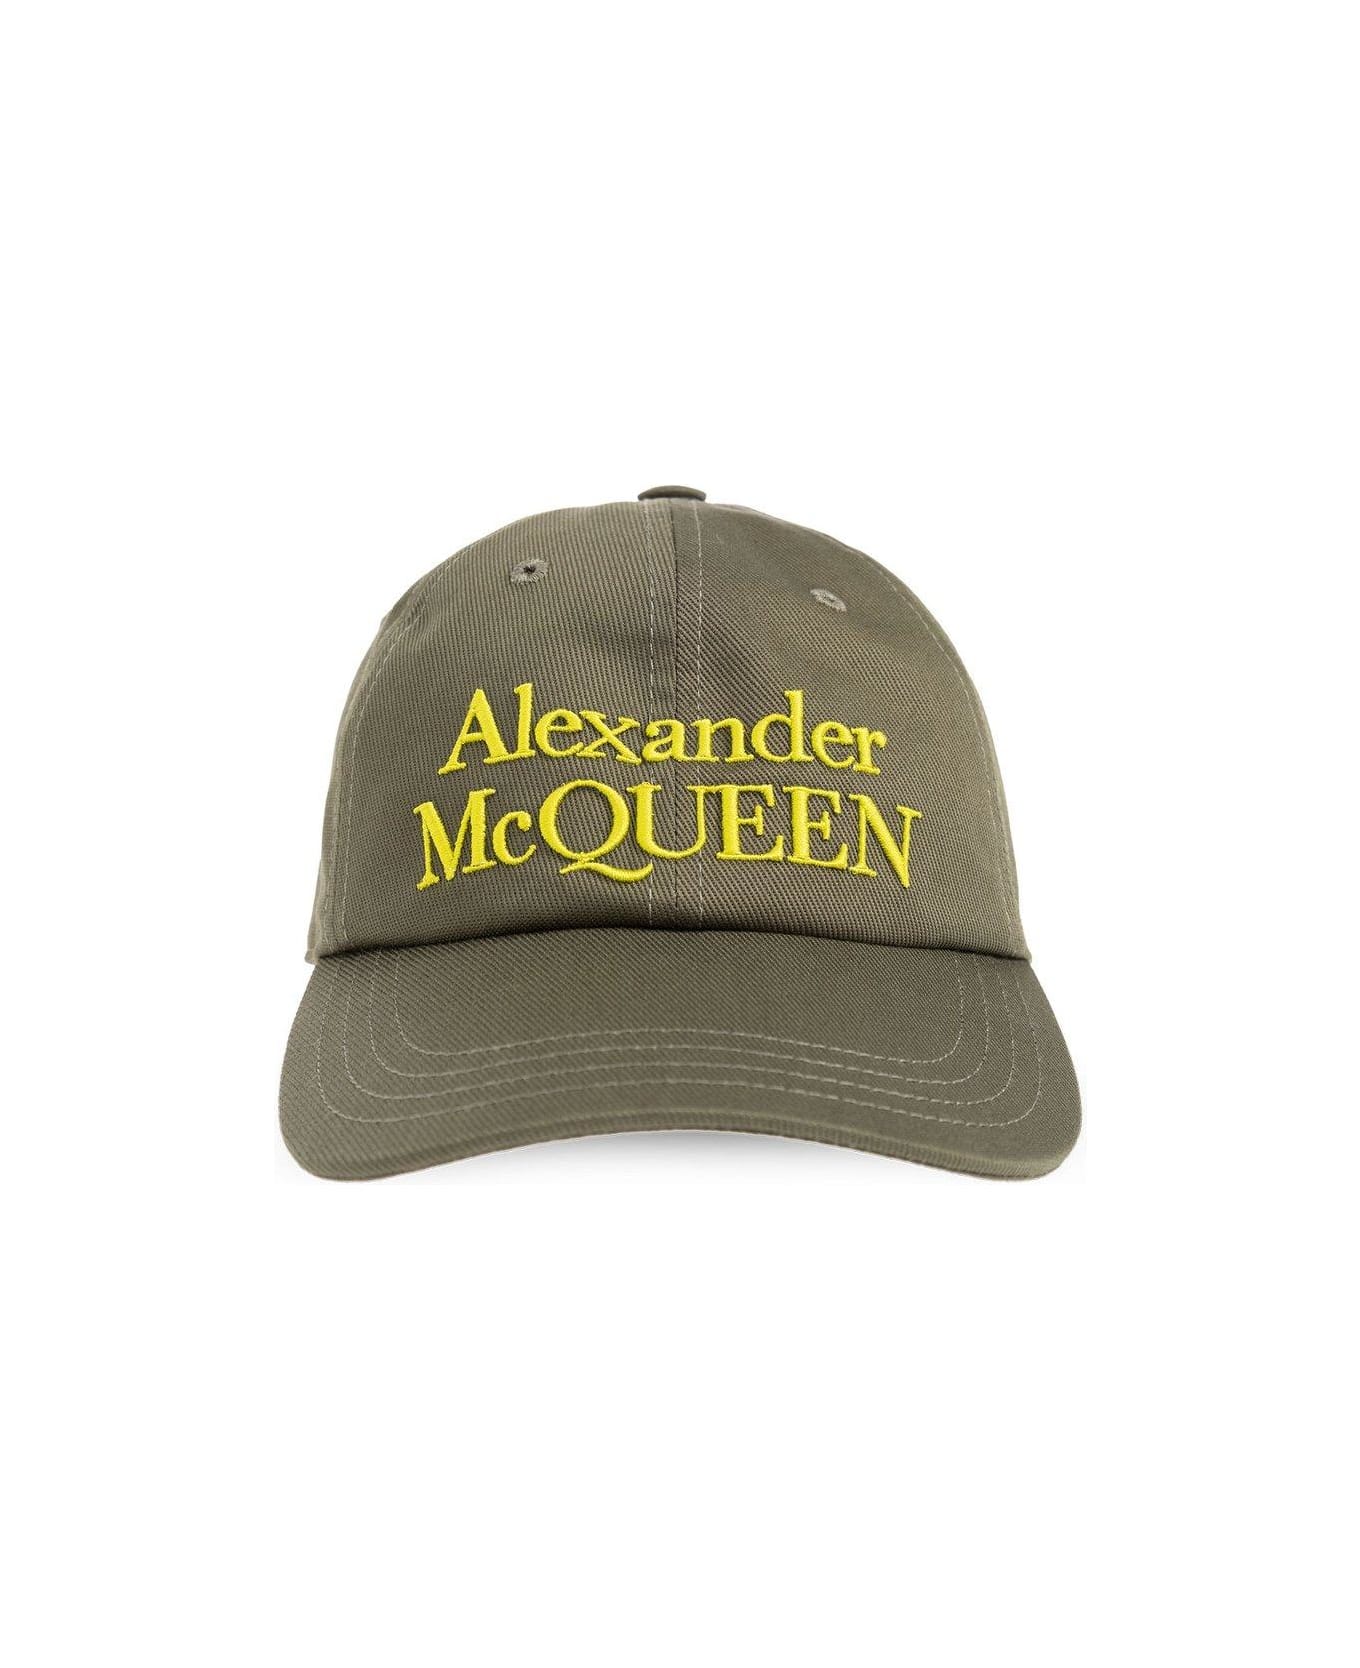 Alexander McQueen Logo Embroidered Baseball Cap - KAKI 帽子